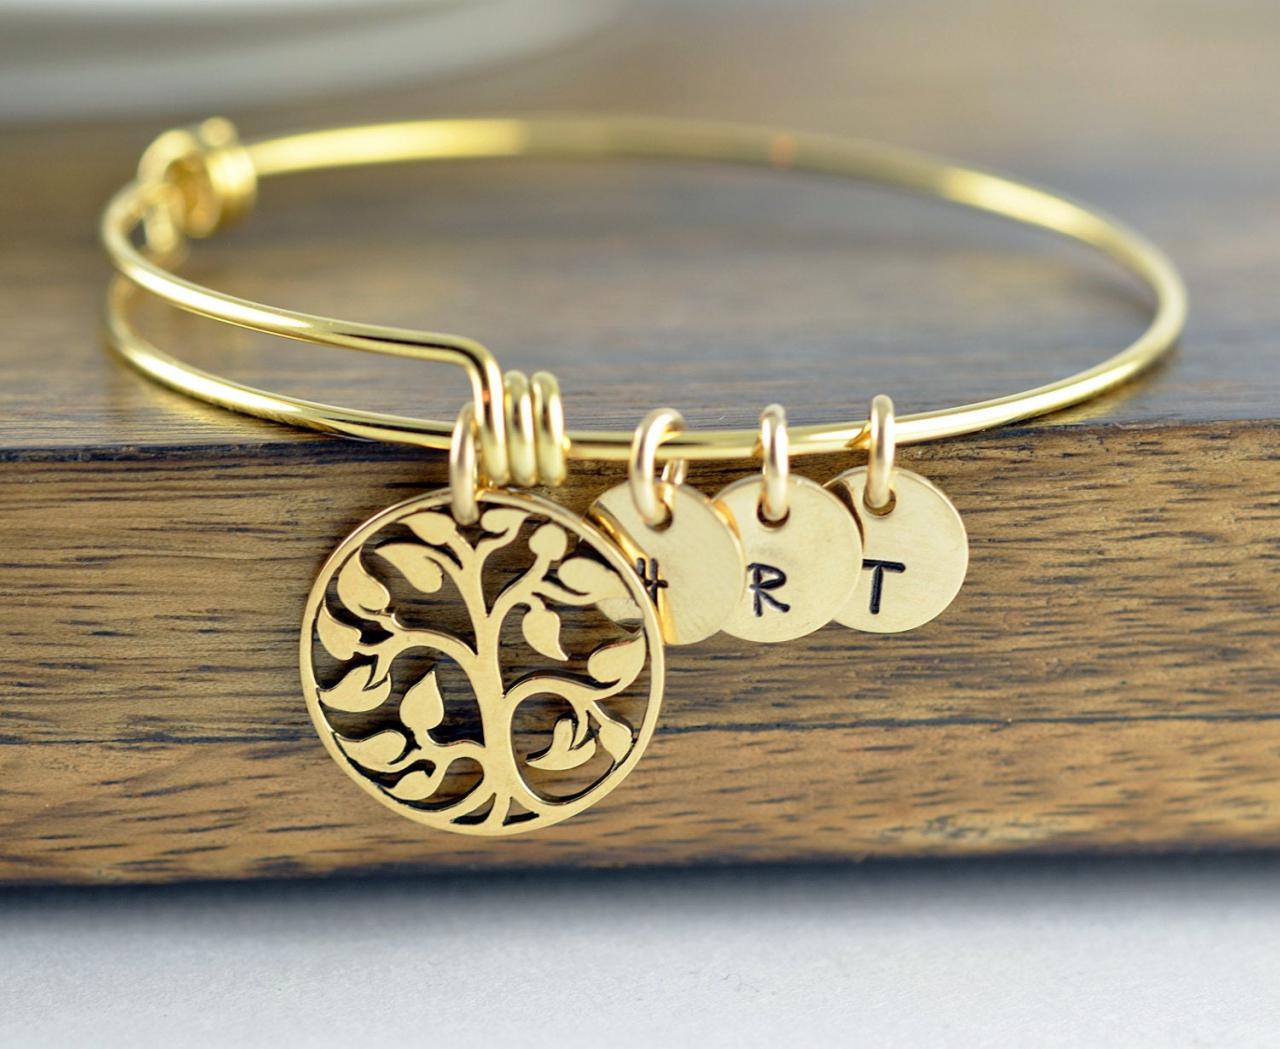 Gold Family Tree Bangle Bracelet - Tree Of Life Bracelet - Family Tree Jewelry - Grandmother Gift - Gifts For Mom - Mom Gift